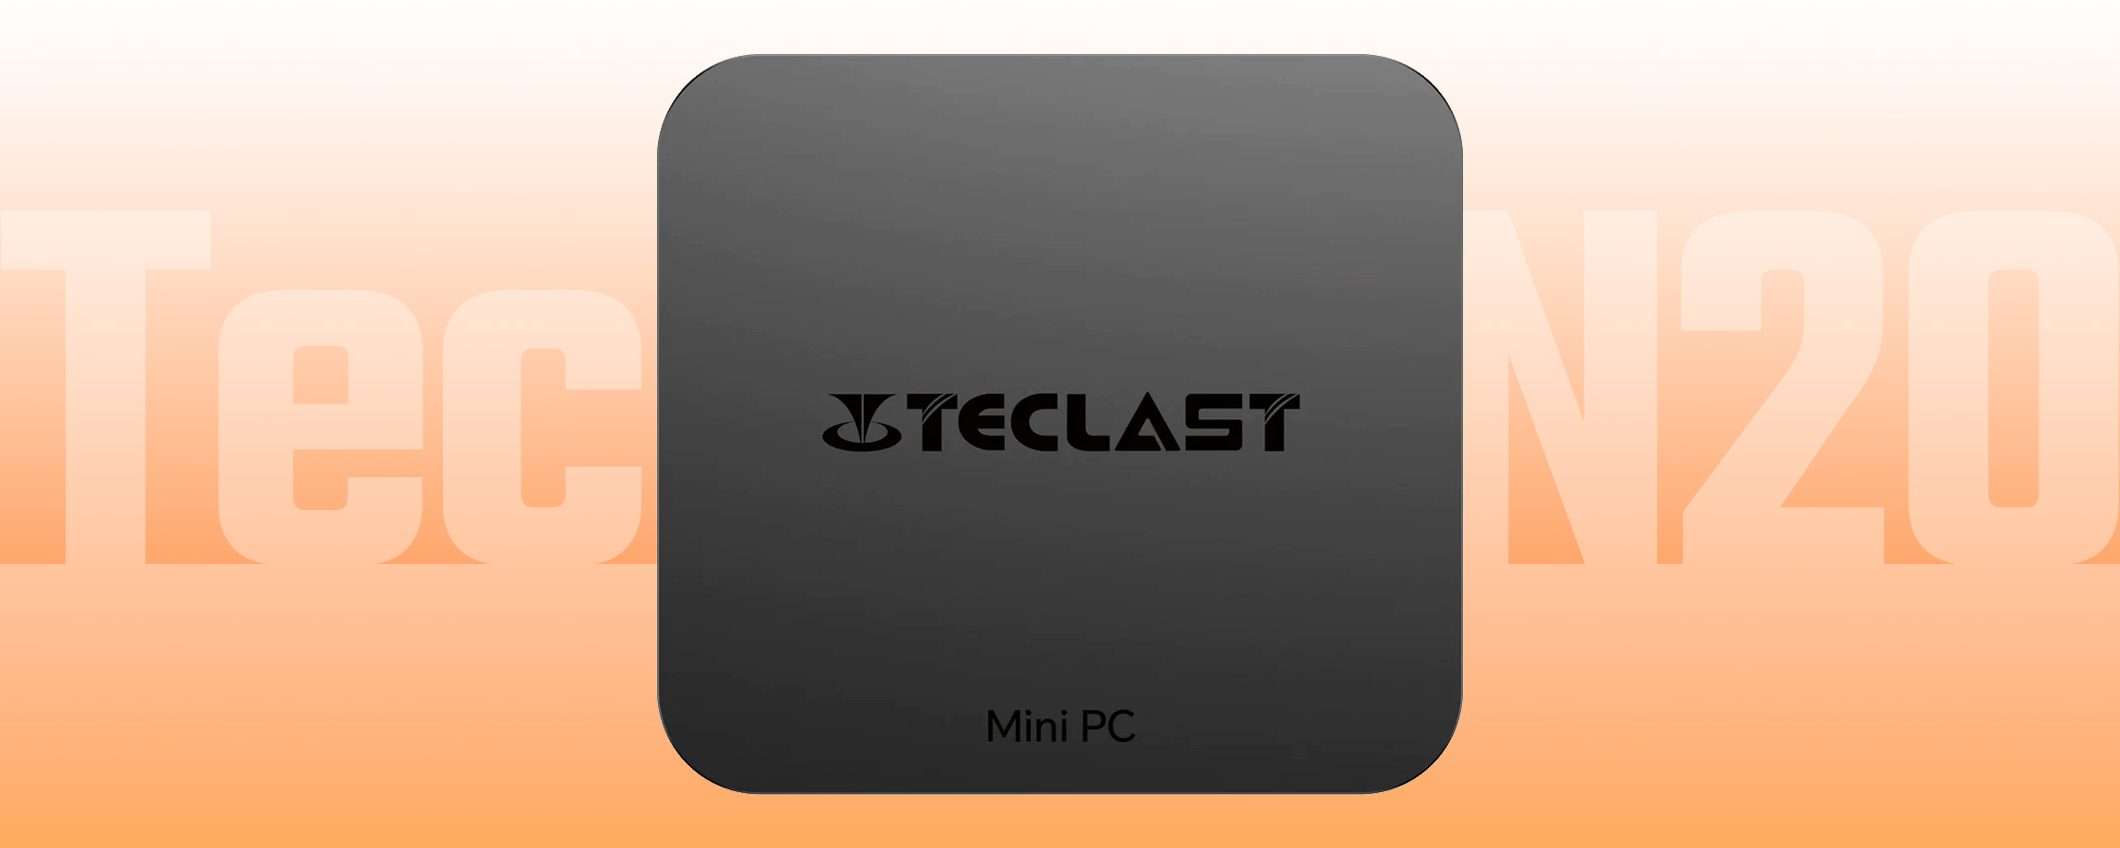 Il MIGLIOR PREZZO di sempre per l'ottimo Mini PC di Teclast